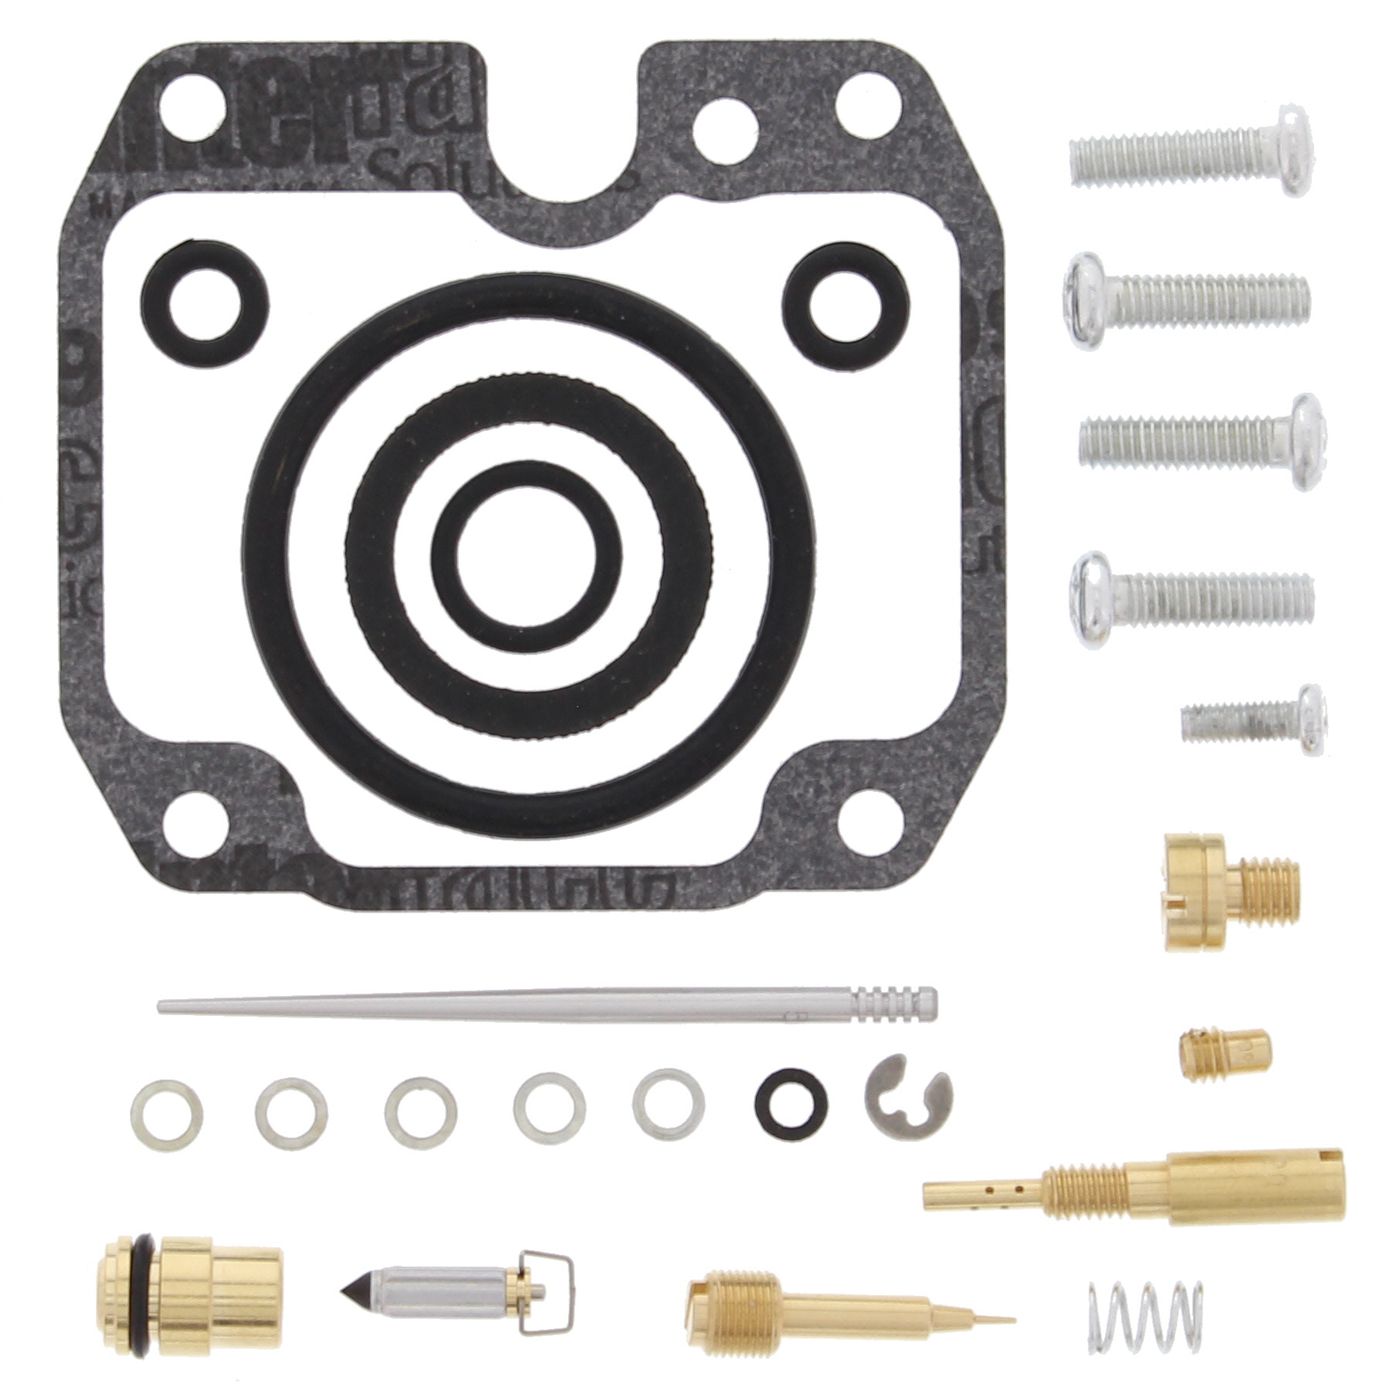 Wrp Carb Repair Kits - WRP261255 image